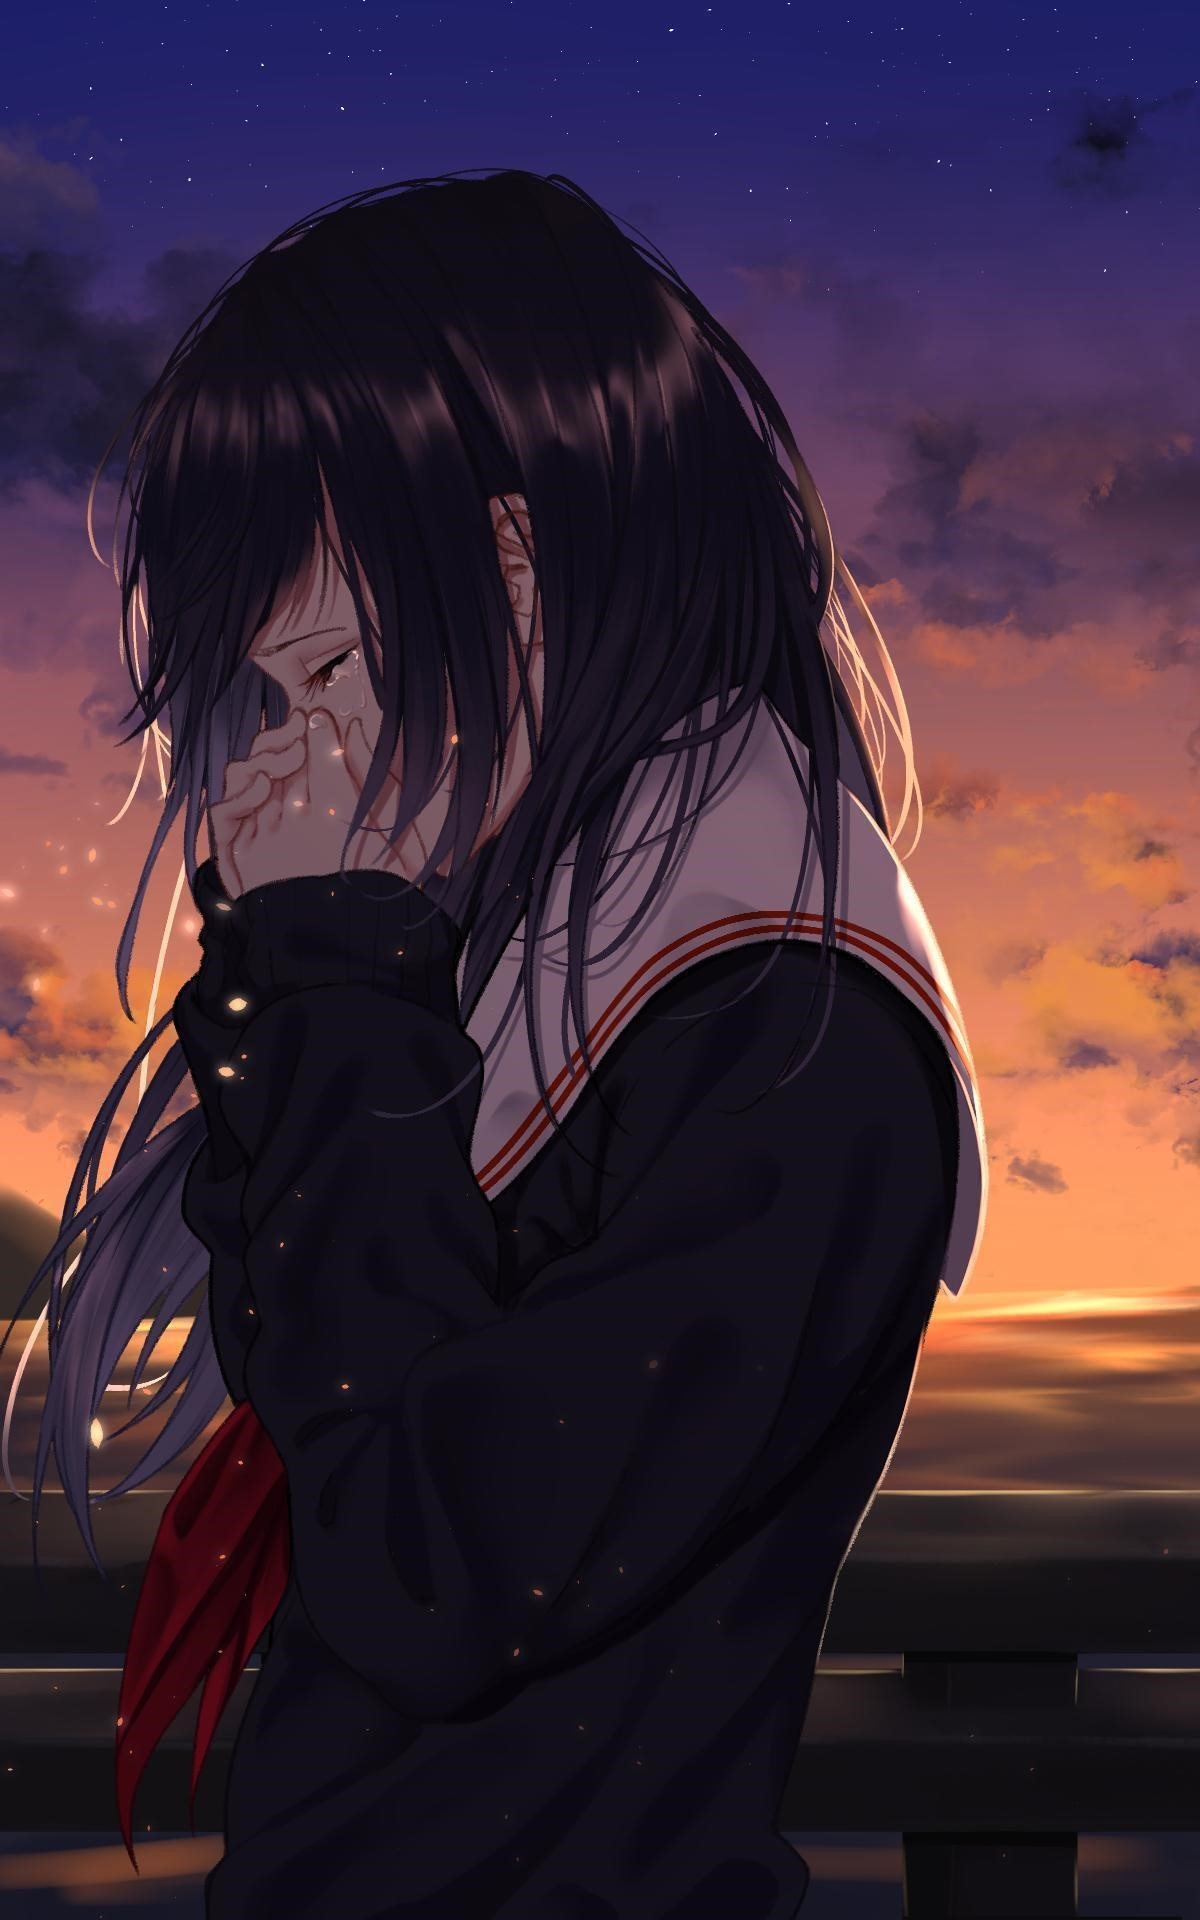 Hình ảnh anime buồn nữ thường thể hiện những cảm xúc sâu sắc và tình cảm đau đớn, mang đến cho người xem một trạng thái tâm trạng buồn lạc và cảm nhận được sự đau khổ trong cuộc sống.